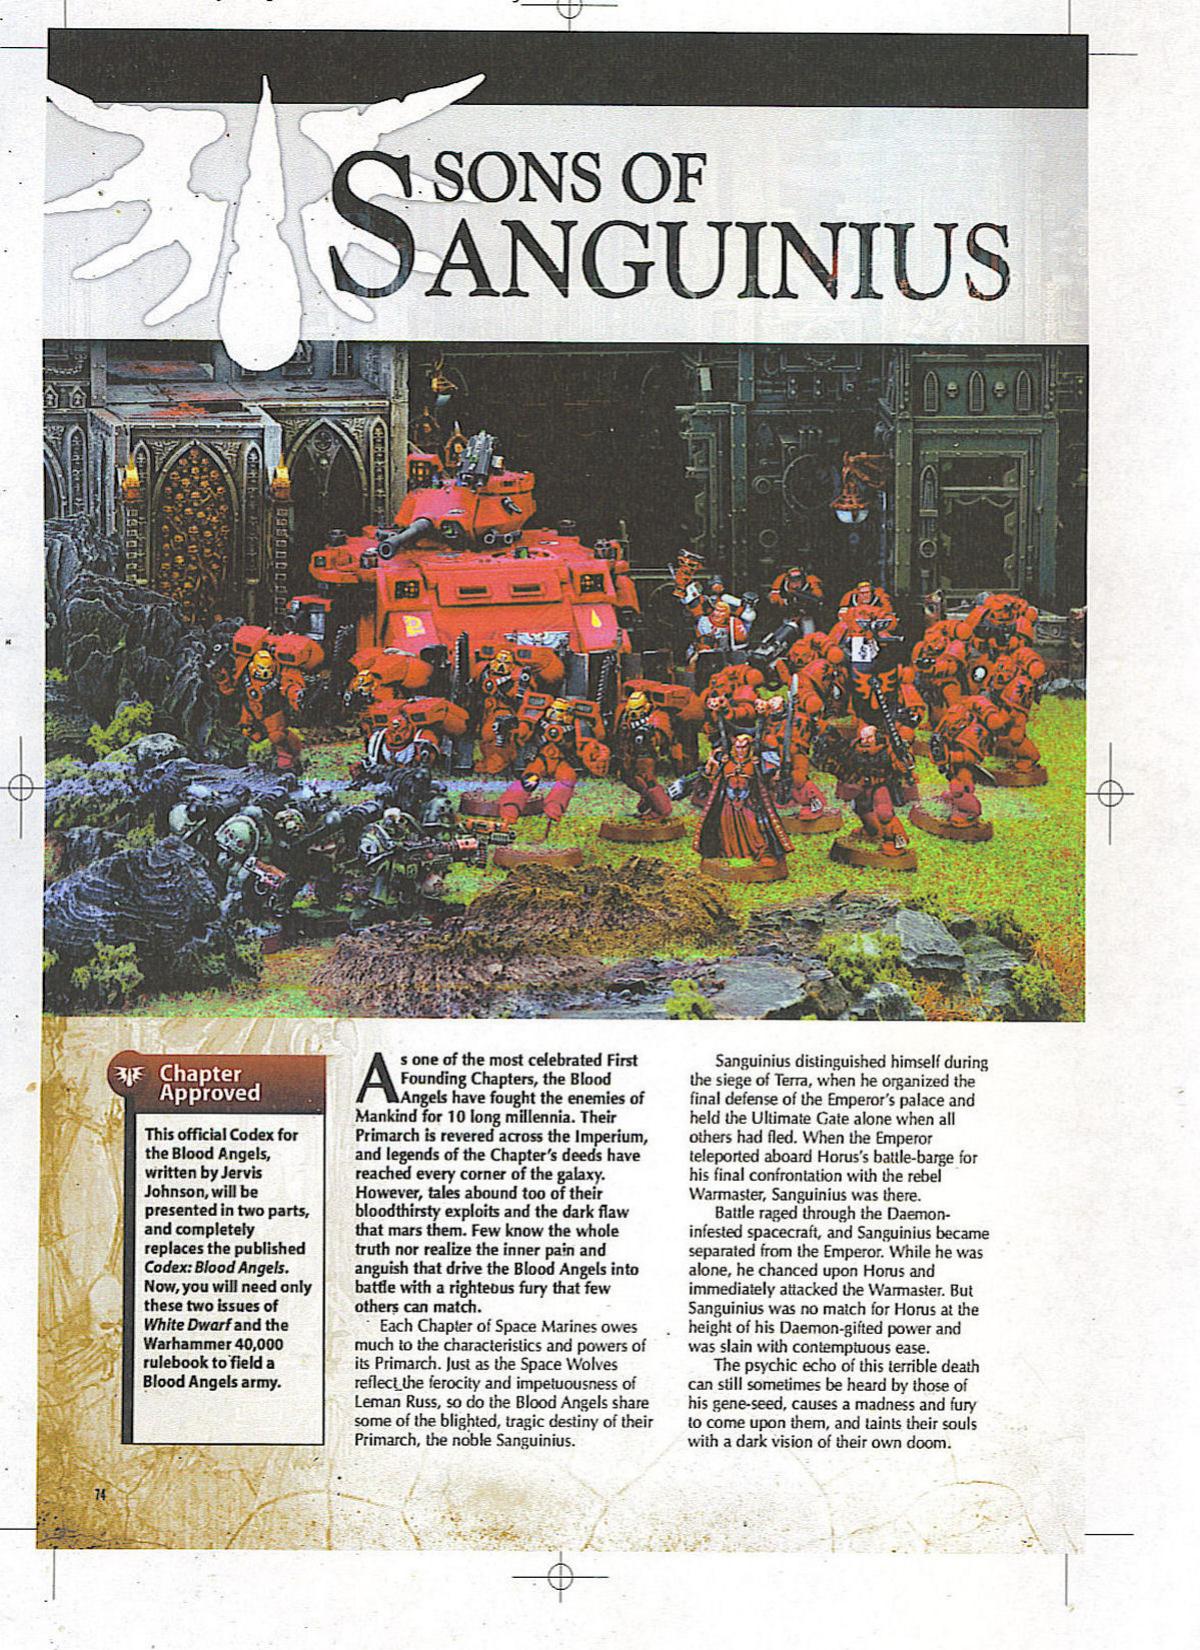 Blood Angels, Sons of Sanguinius